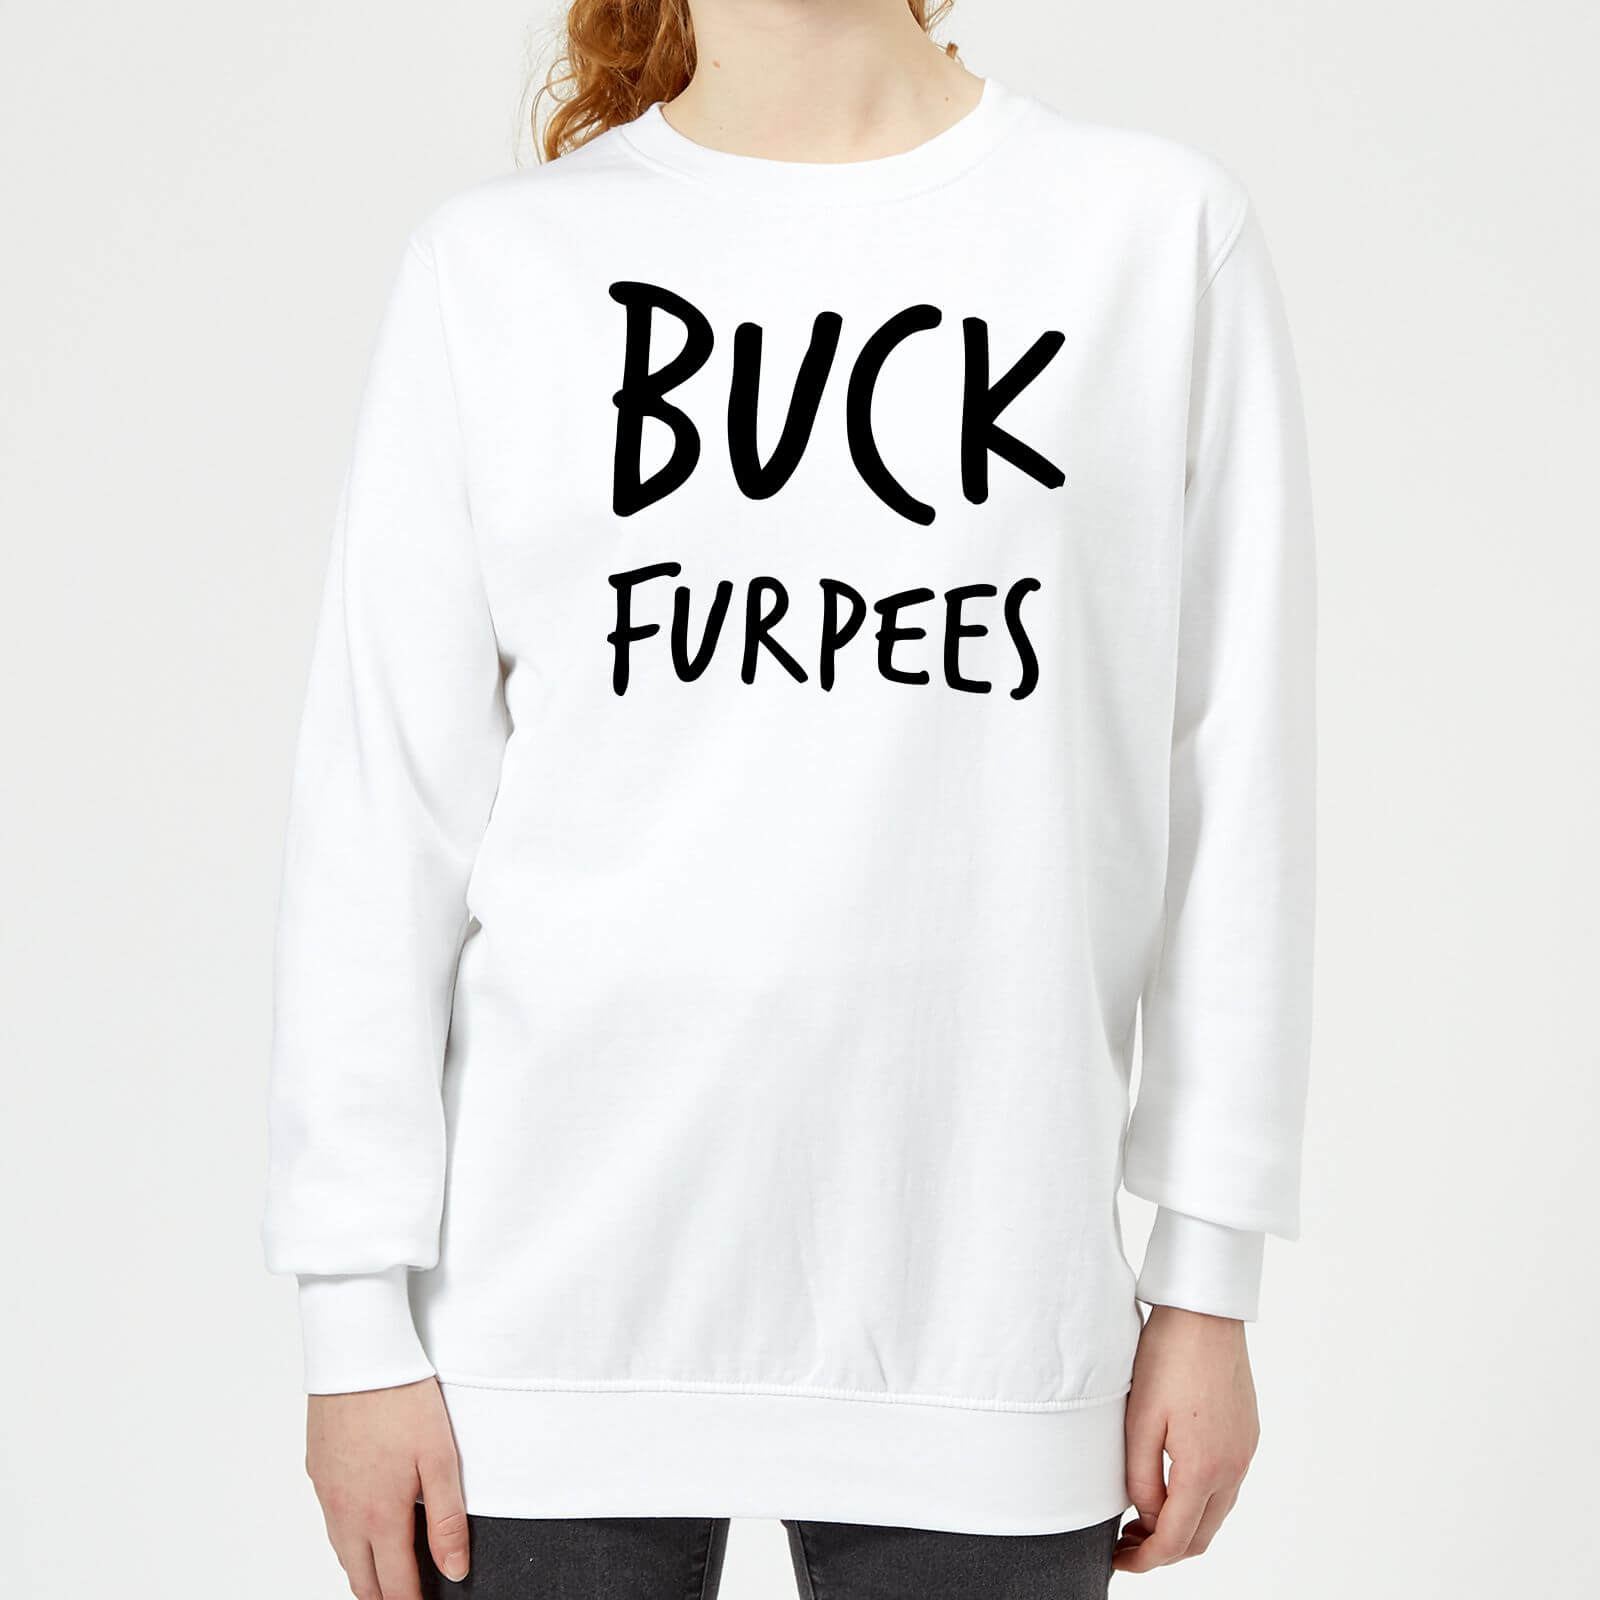 Buck Furpees Women's Sweatshirt - White - M - White